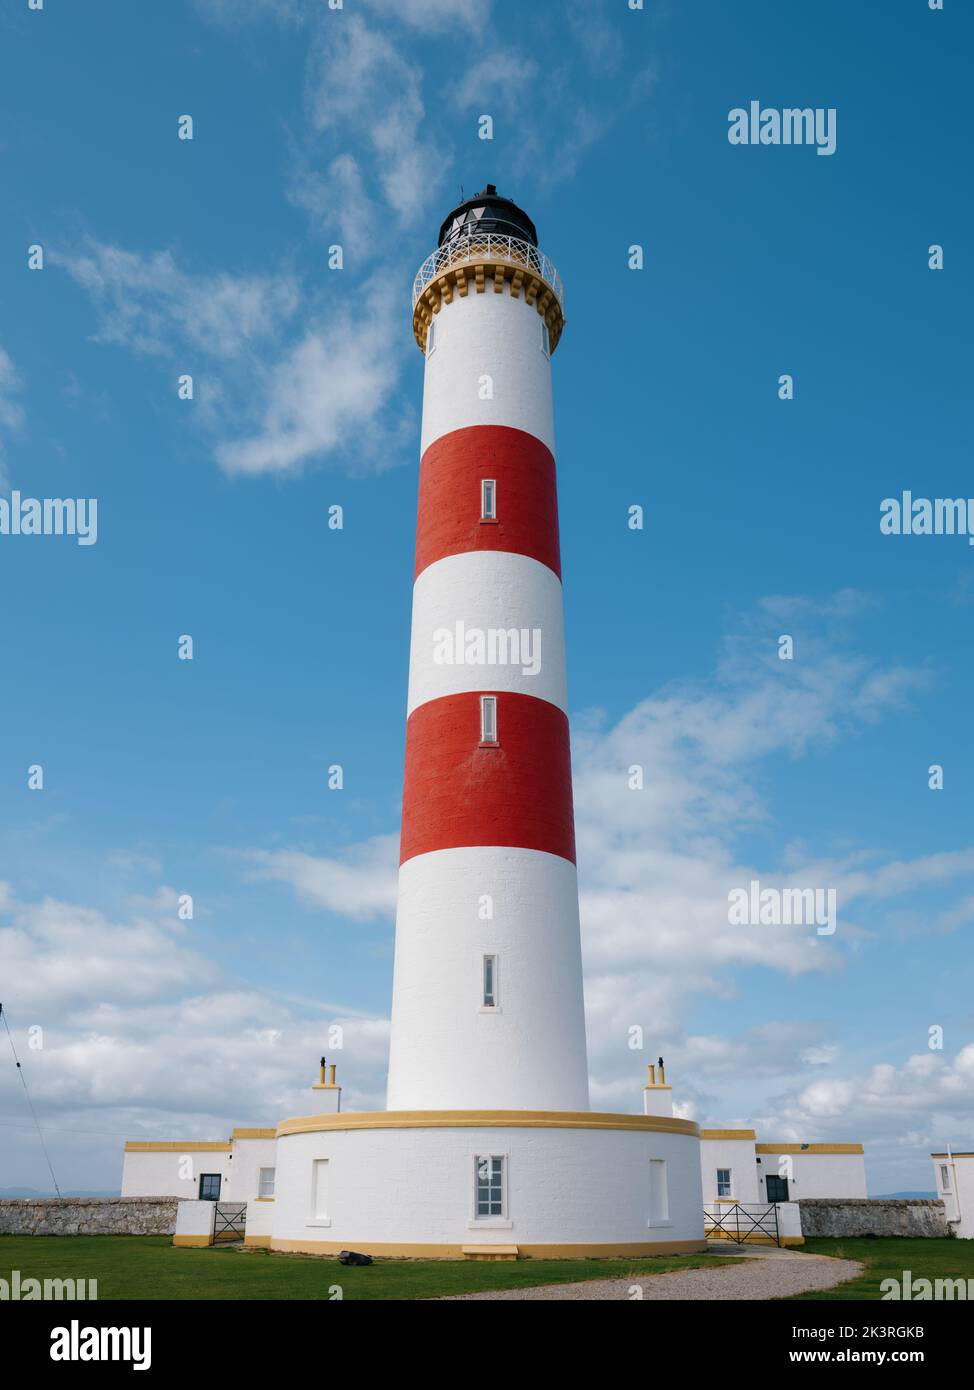 Le phare de la tour Tarbat Ness à rayures rouges et blanches, Tarbat Ness, Tain & Easter Ross, Cromartyshire, Écosse, Royaume-Uni Banque D'Images